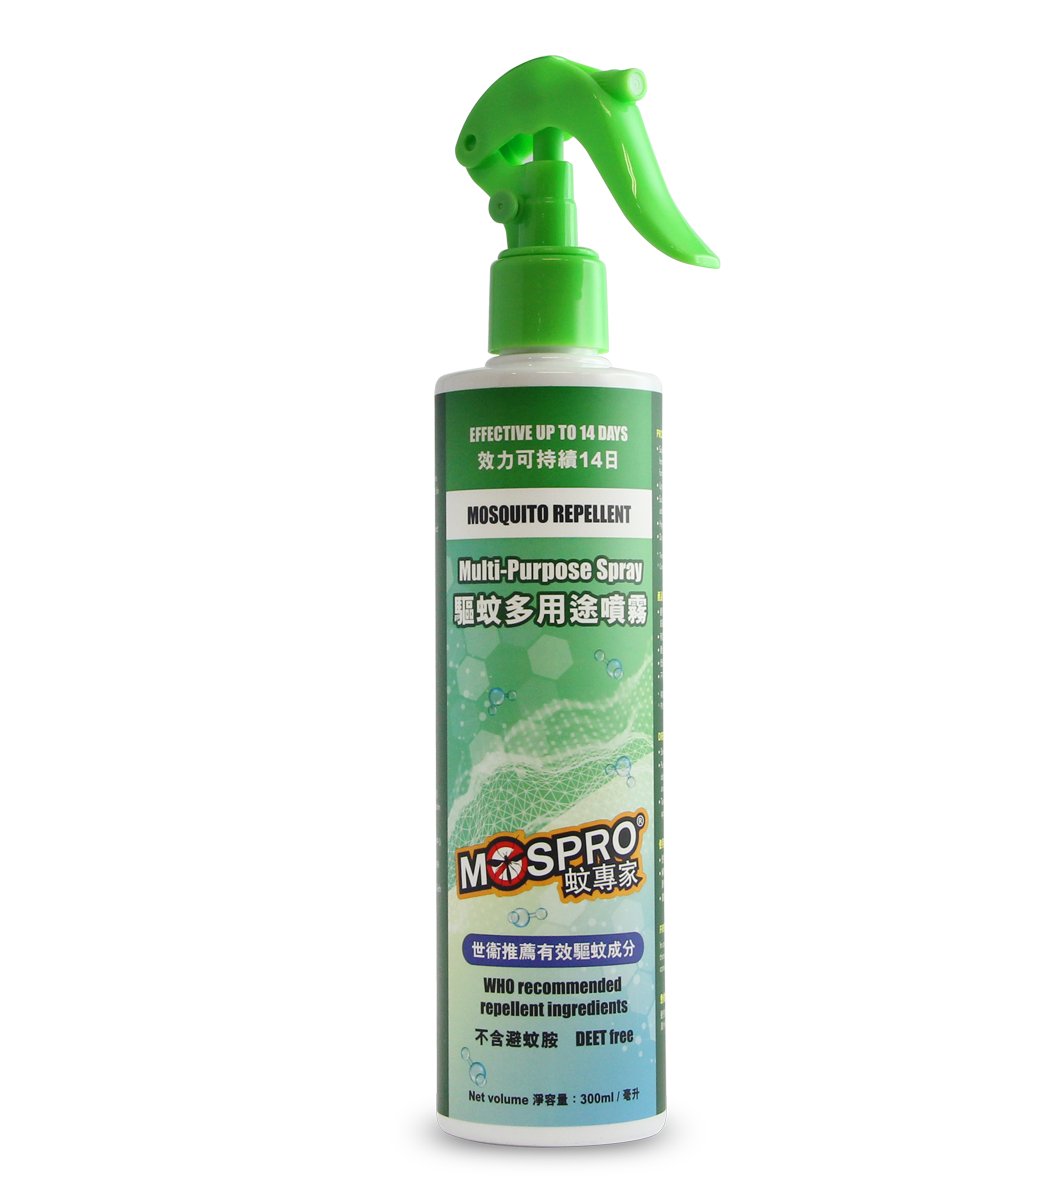 MOSQUITO REPELLENT Multi-Purpose Spray